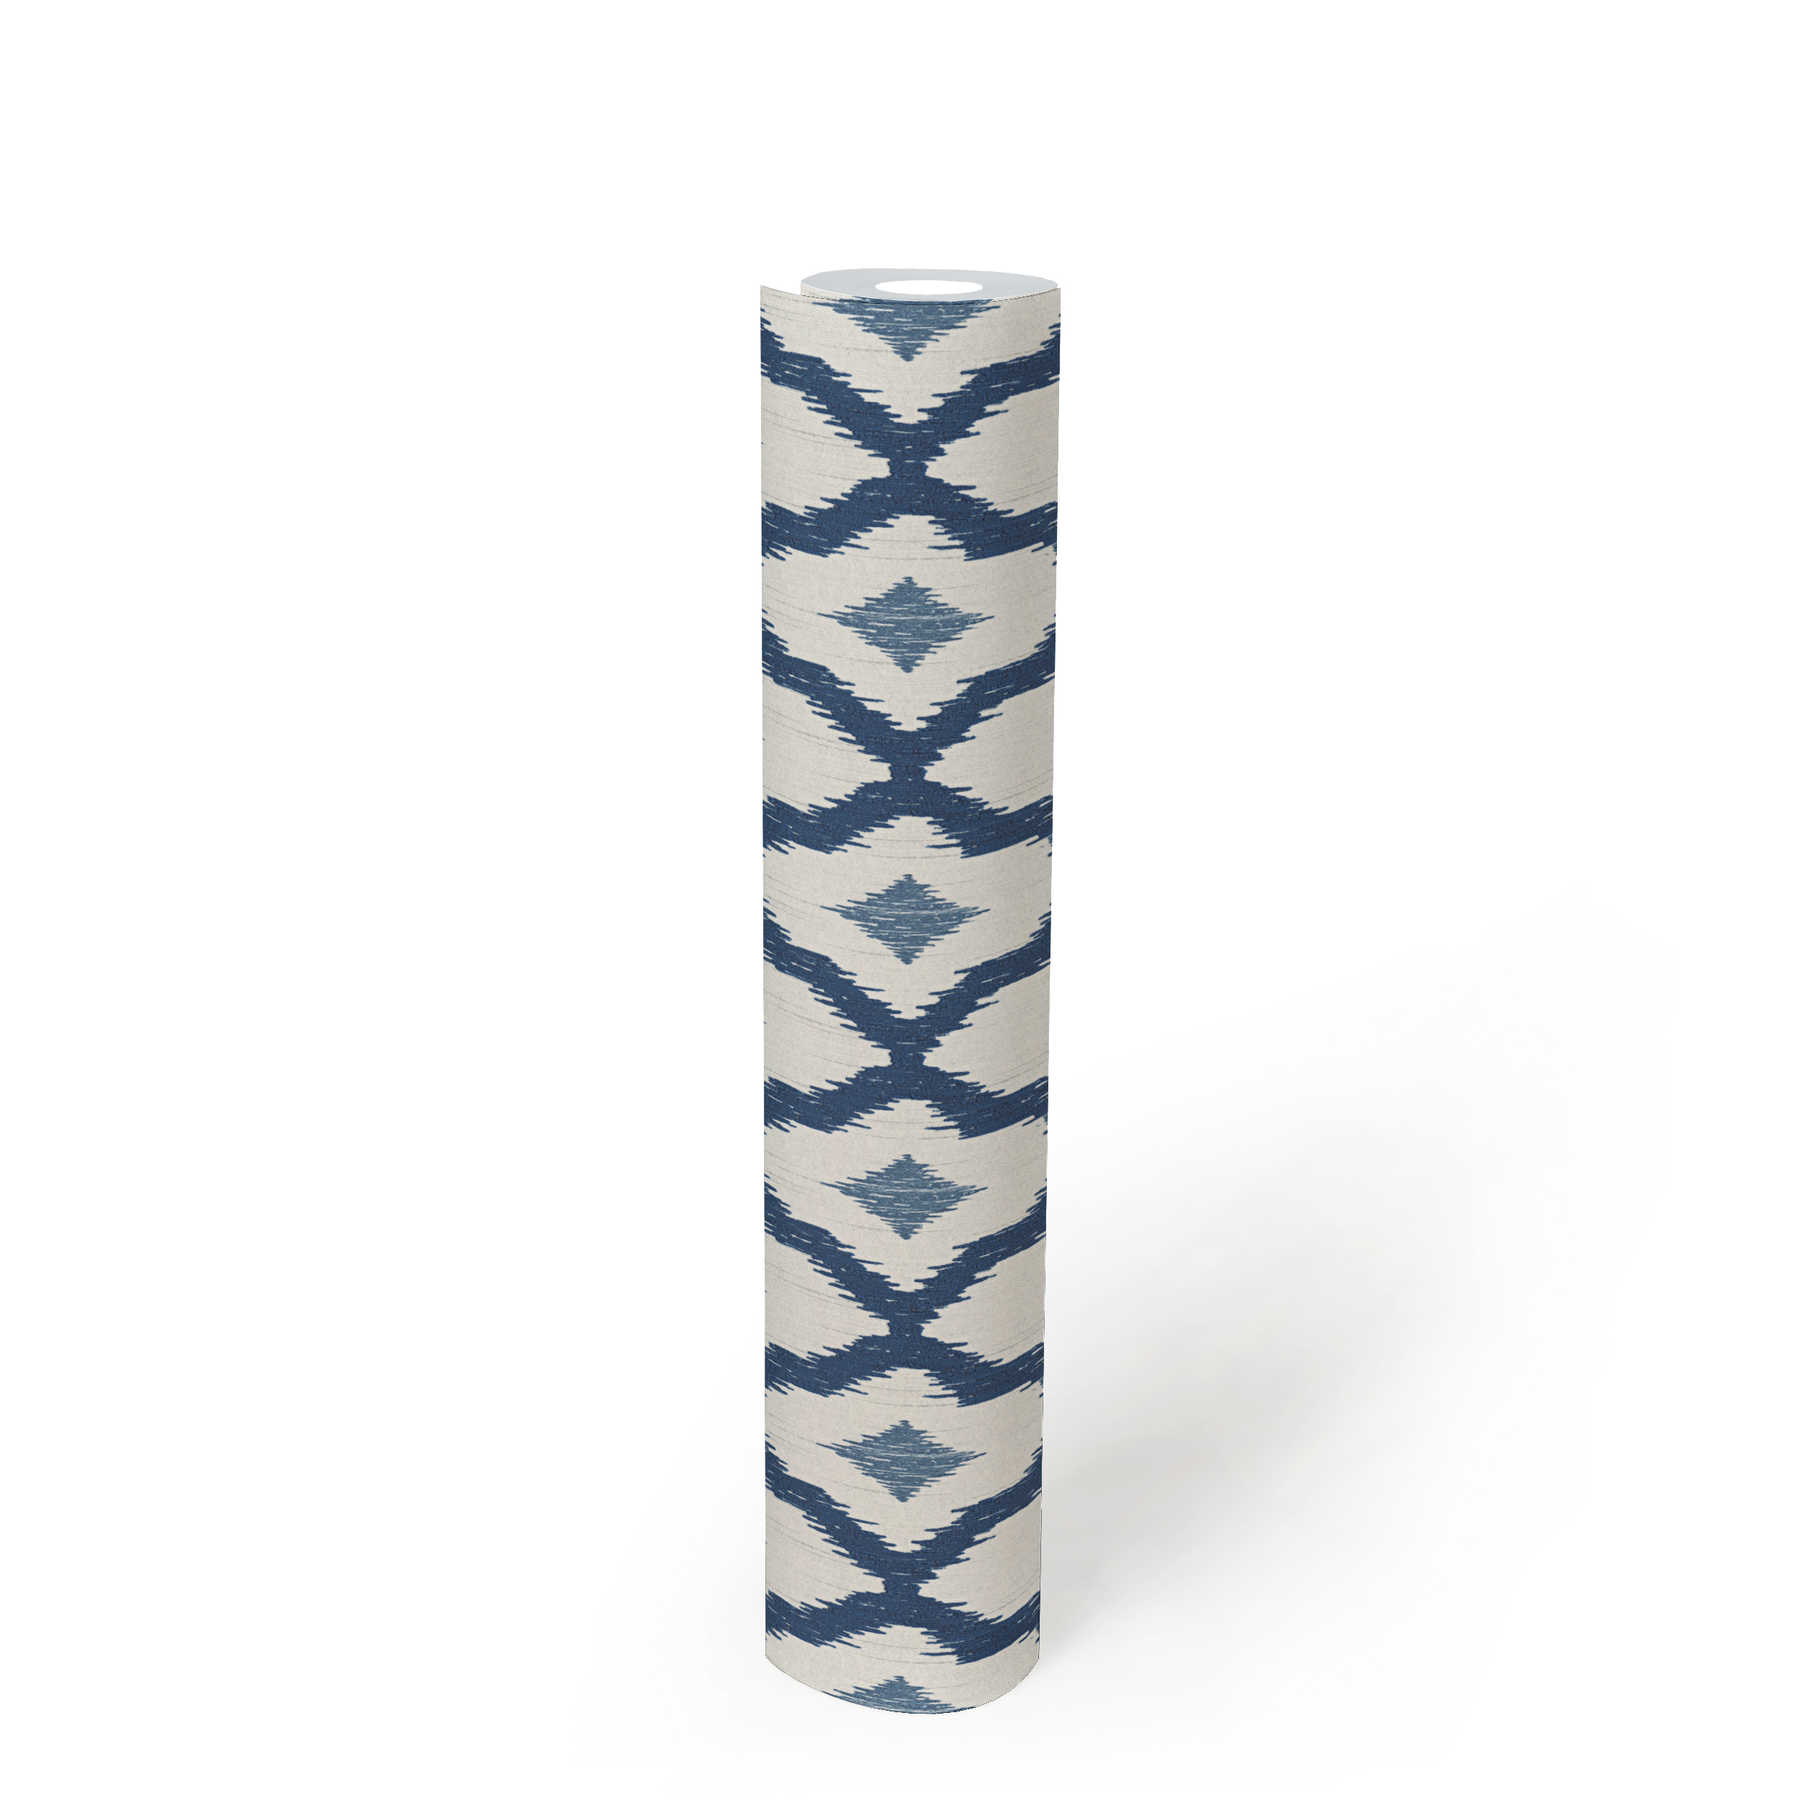             Vliestapete Ikat Muster mit Rauten Motiv – Blau, Weiß
        